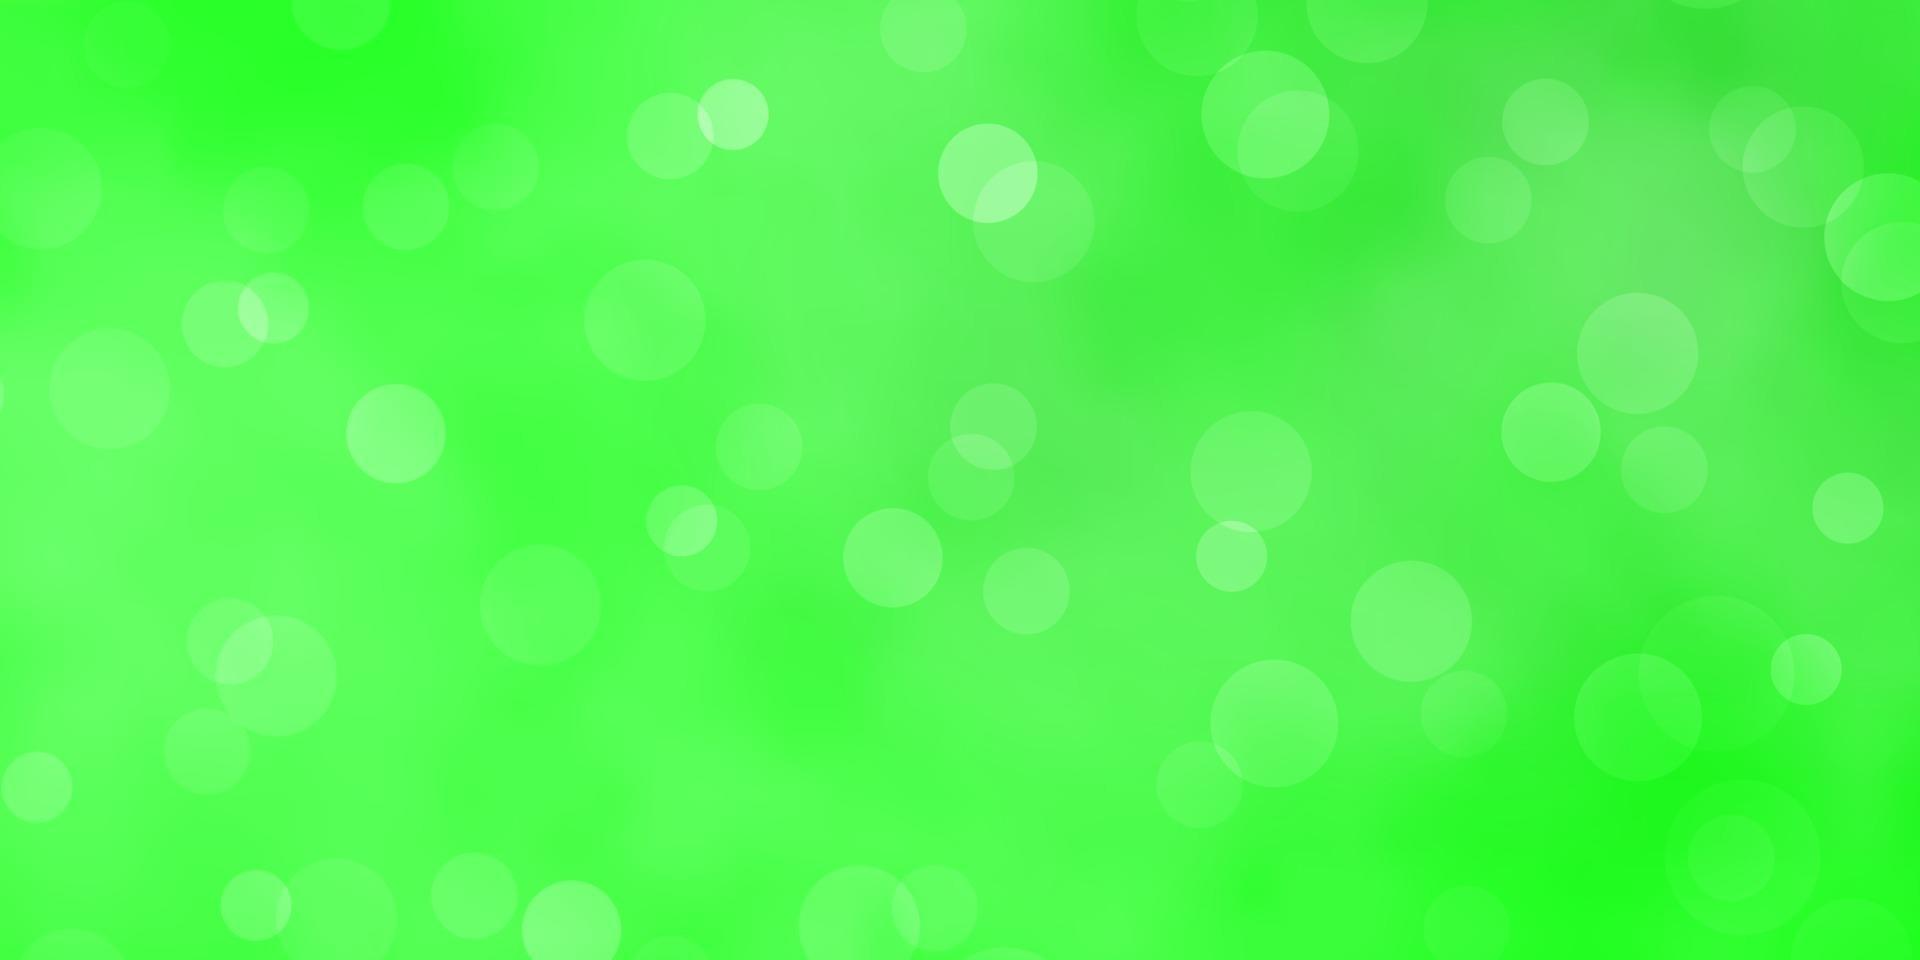 sfondo vettoriale verde chiaro con macchie.